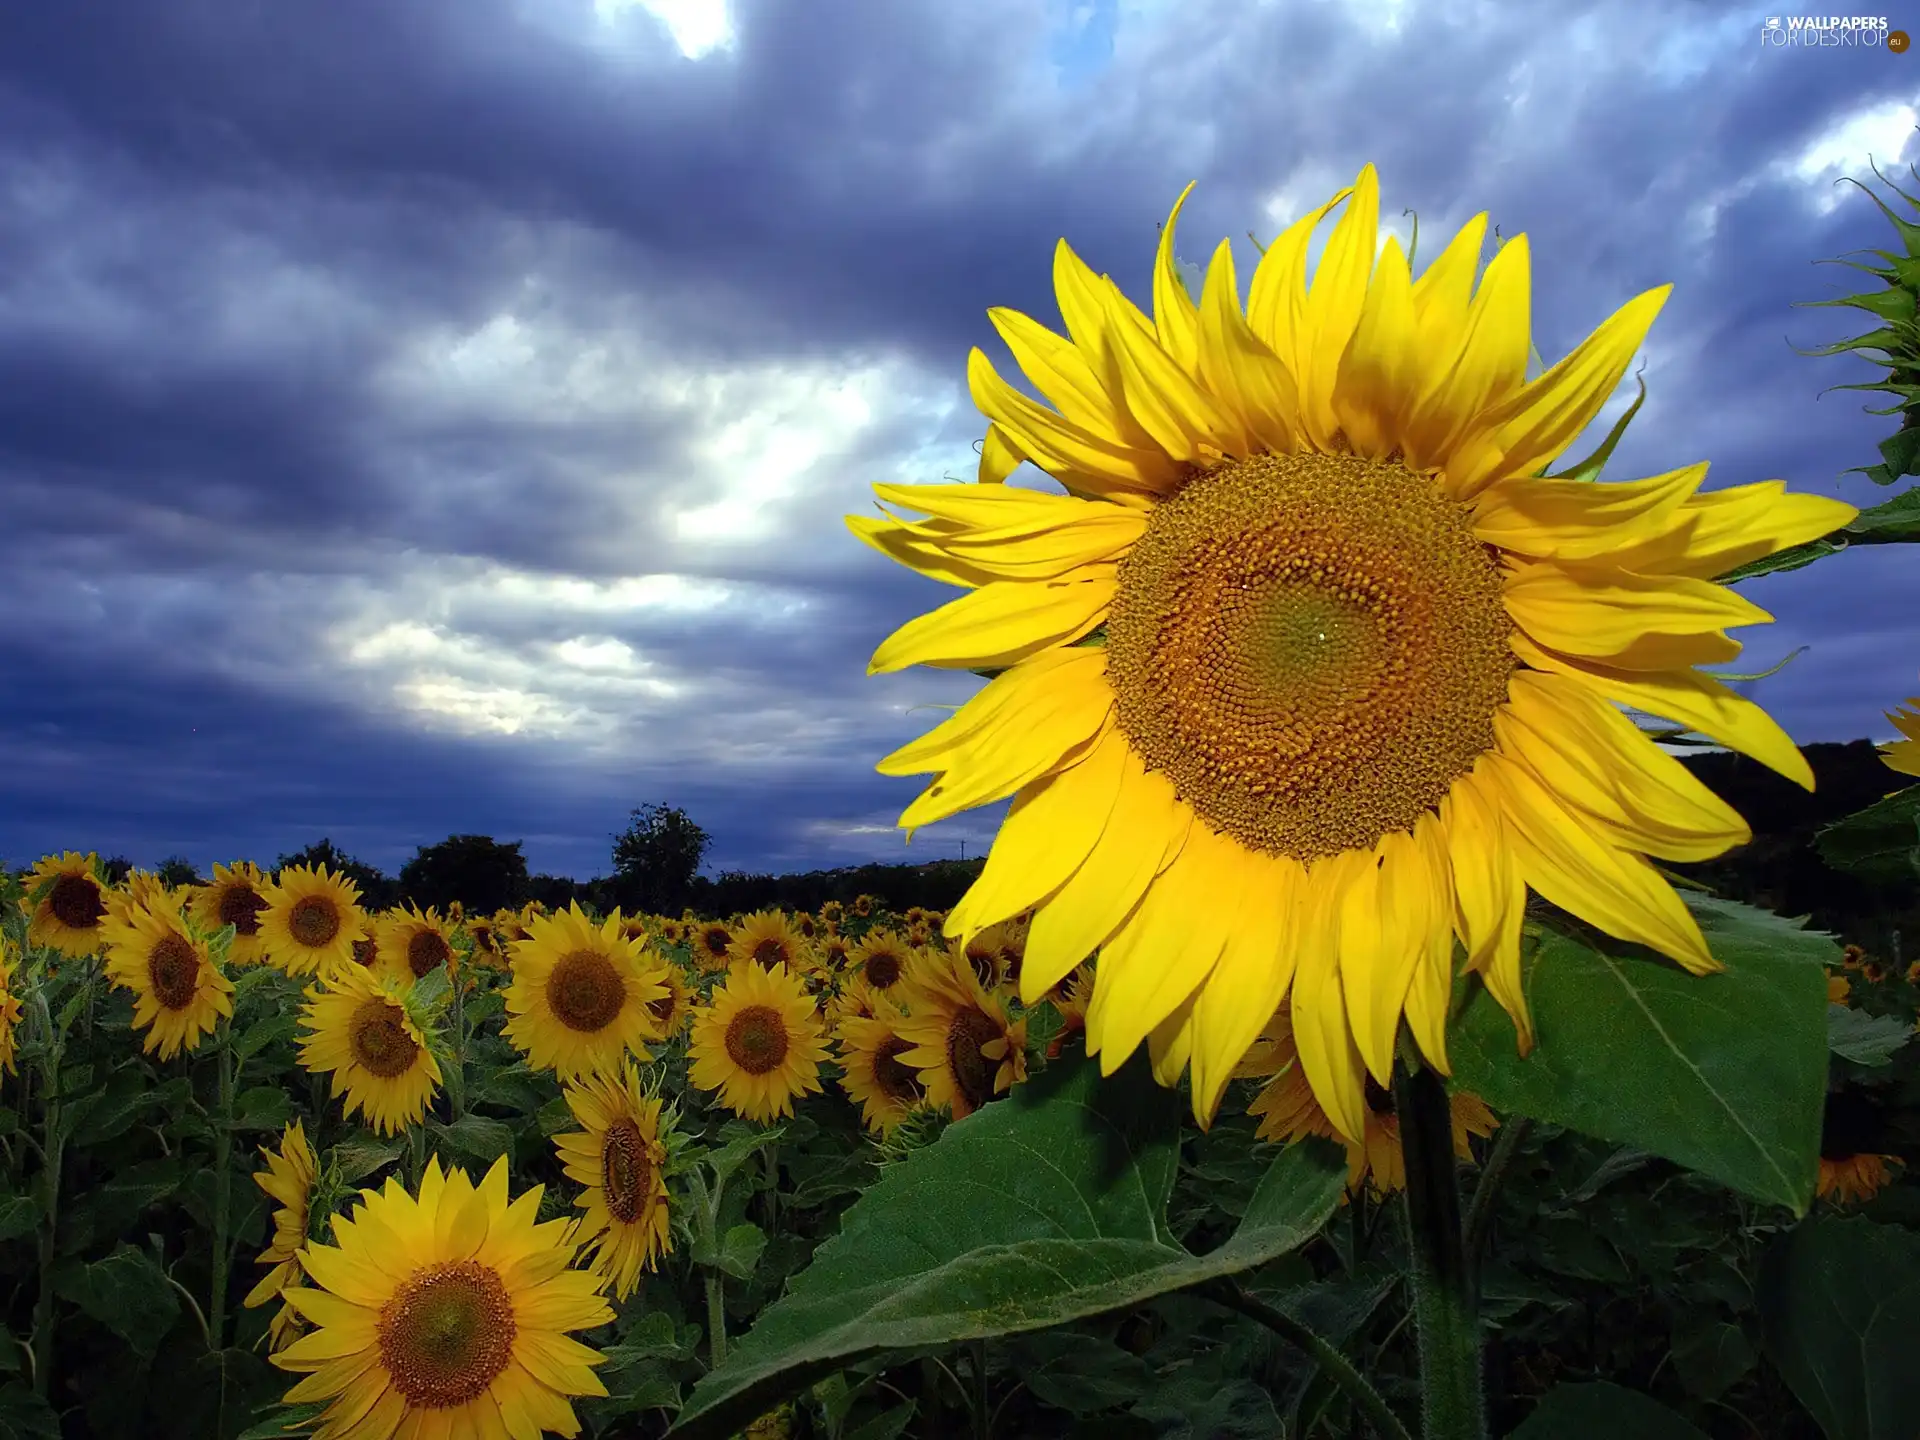 Field, Donnerskirchen, Austria, sunflowers